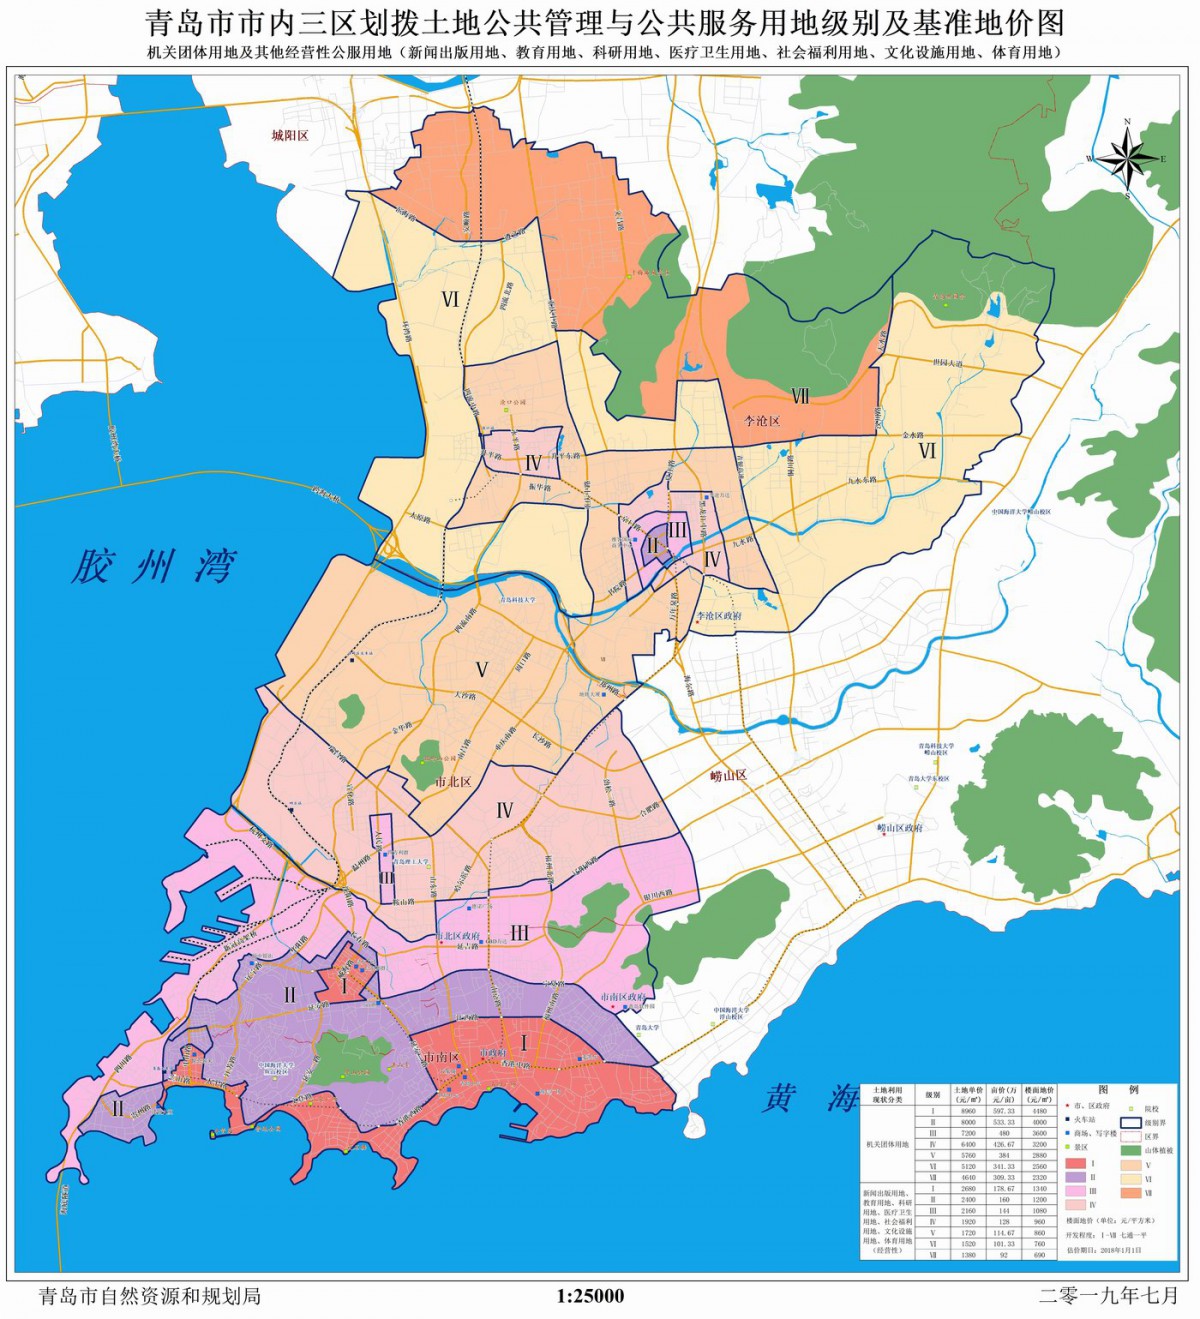 青岛市市内三区划拨土地公共管理与公共服务用地级别及基准地价图（机关团体用地、新闻出版用地、教育用地、科研用地、医疗卫生用地、社会福利用地、文化设施用地、体育用地）